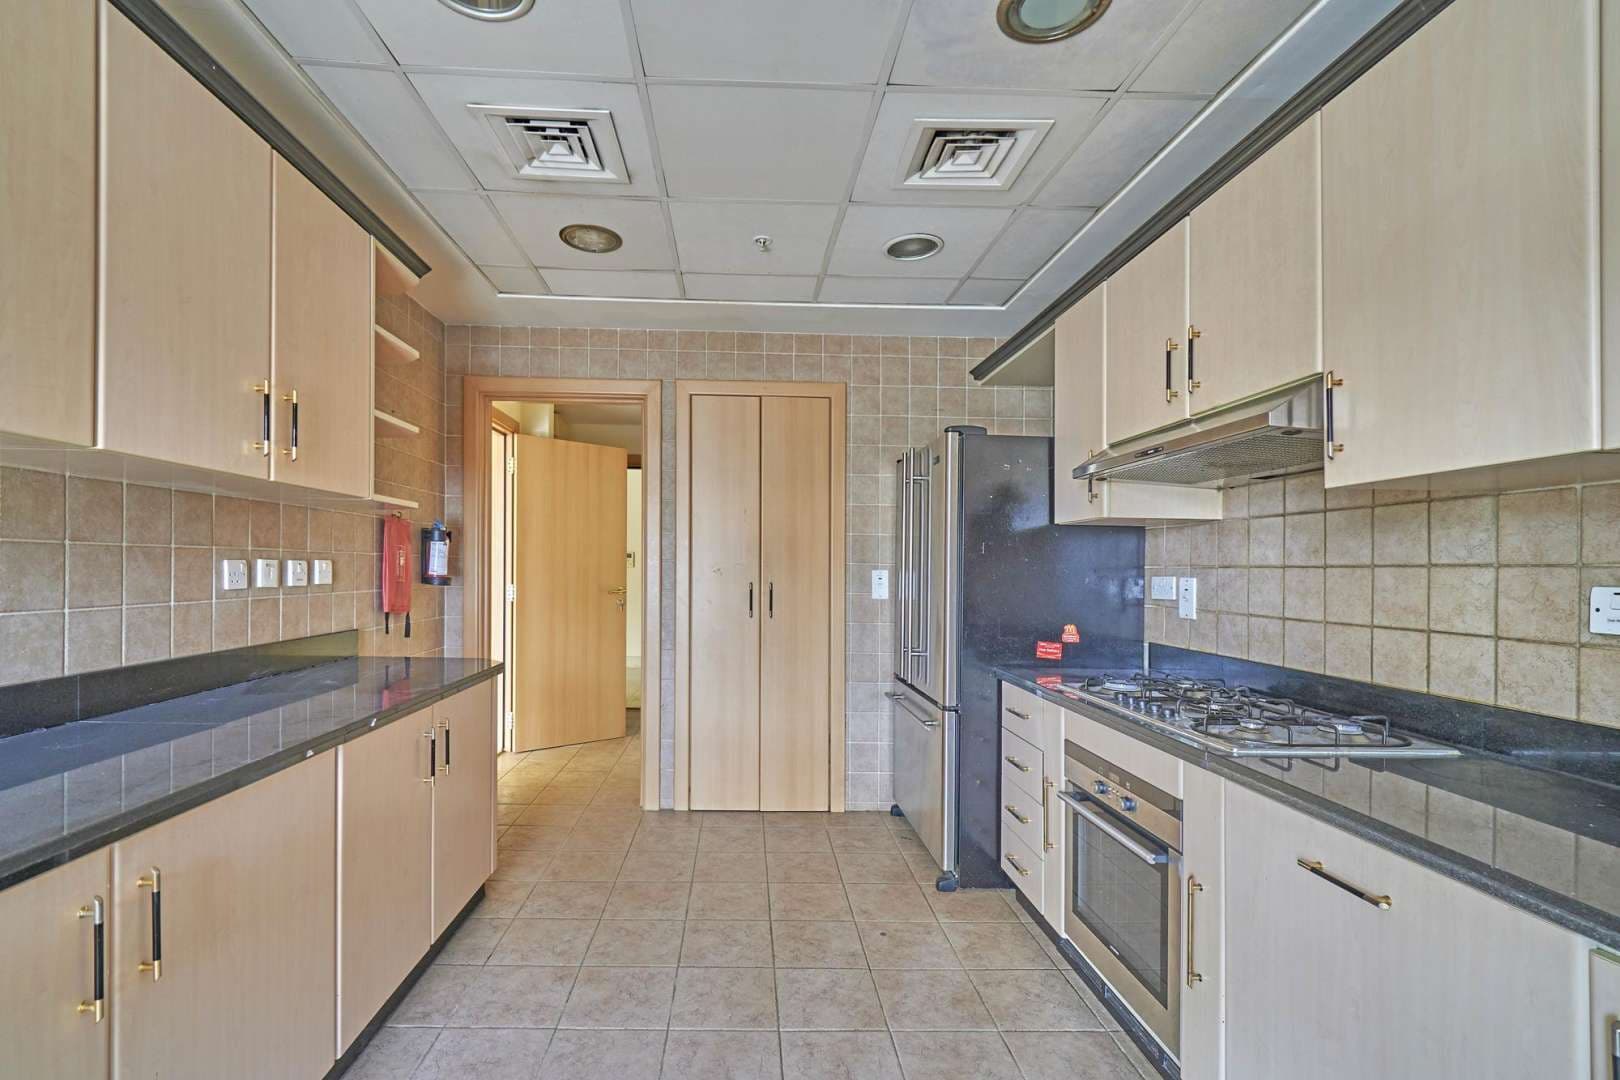 4 Bedroom Apartment For Rent Marina Quay West Lp05531 1509d8d58e061000.jpg